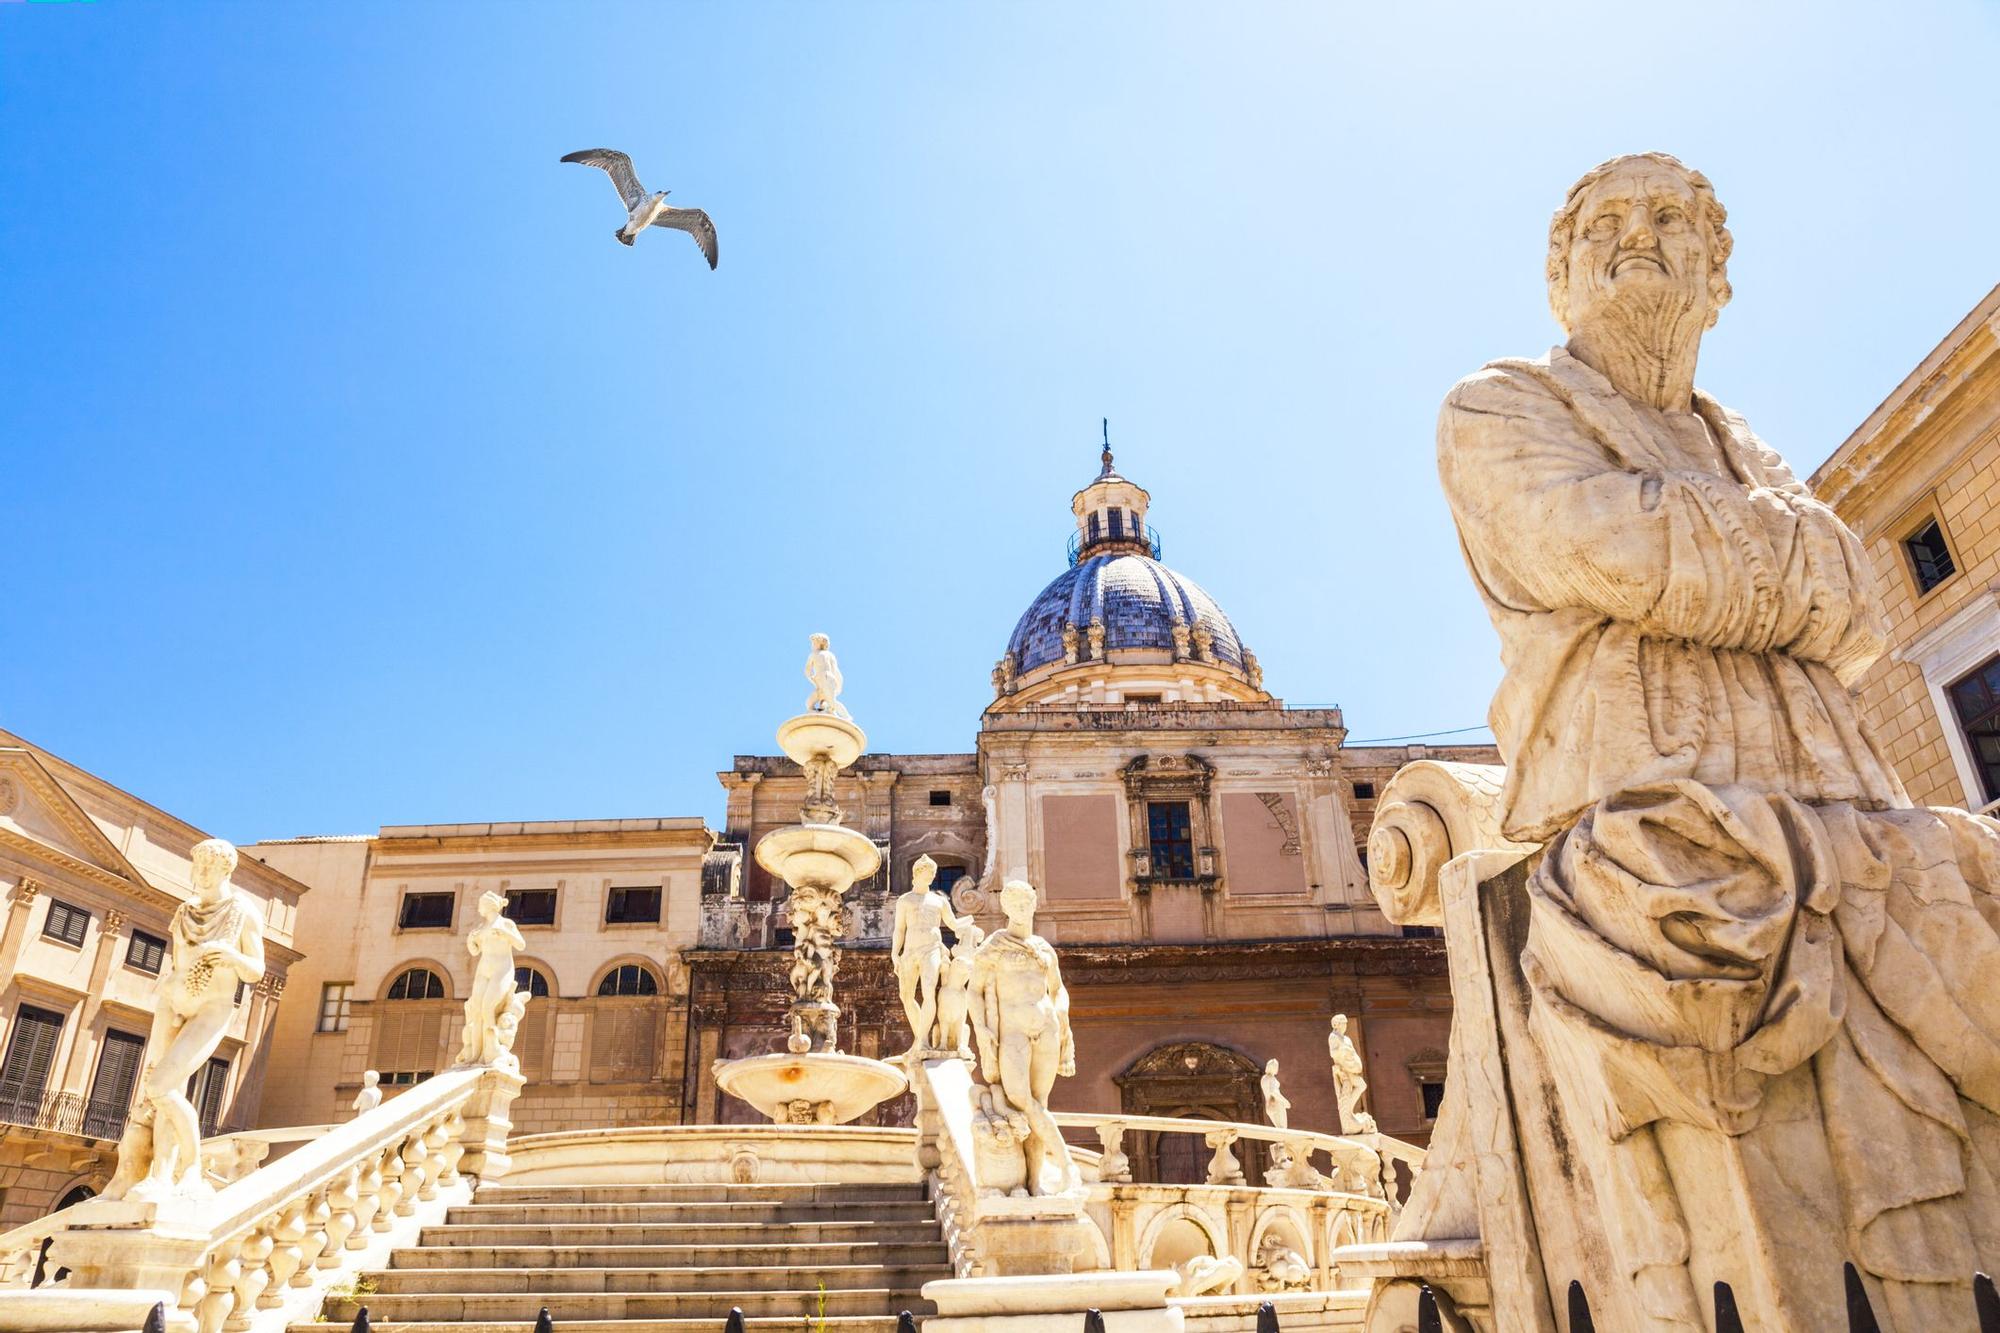 Palermo, la capital de Sicilia, acoge monumentos impresionantes